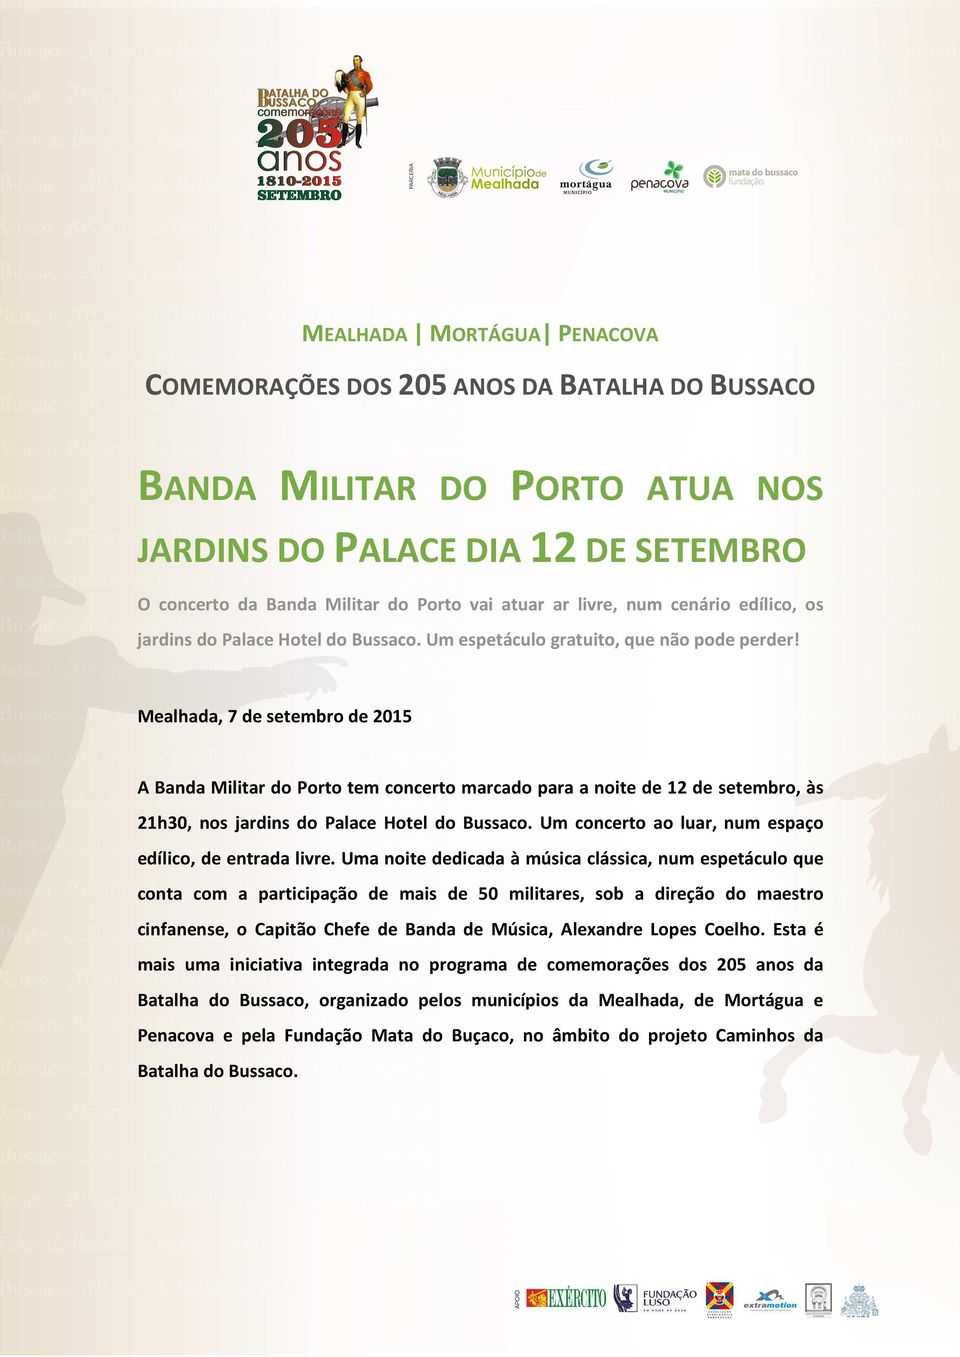 Mealhada, 7 de setembro de 2015 A Banda Militar do Porto tem concerto marcado para a noite de 12 de setembro, às 21h30, nos jardins do Palace Hotel do Bussaco.